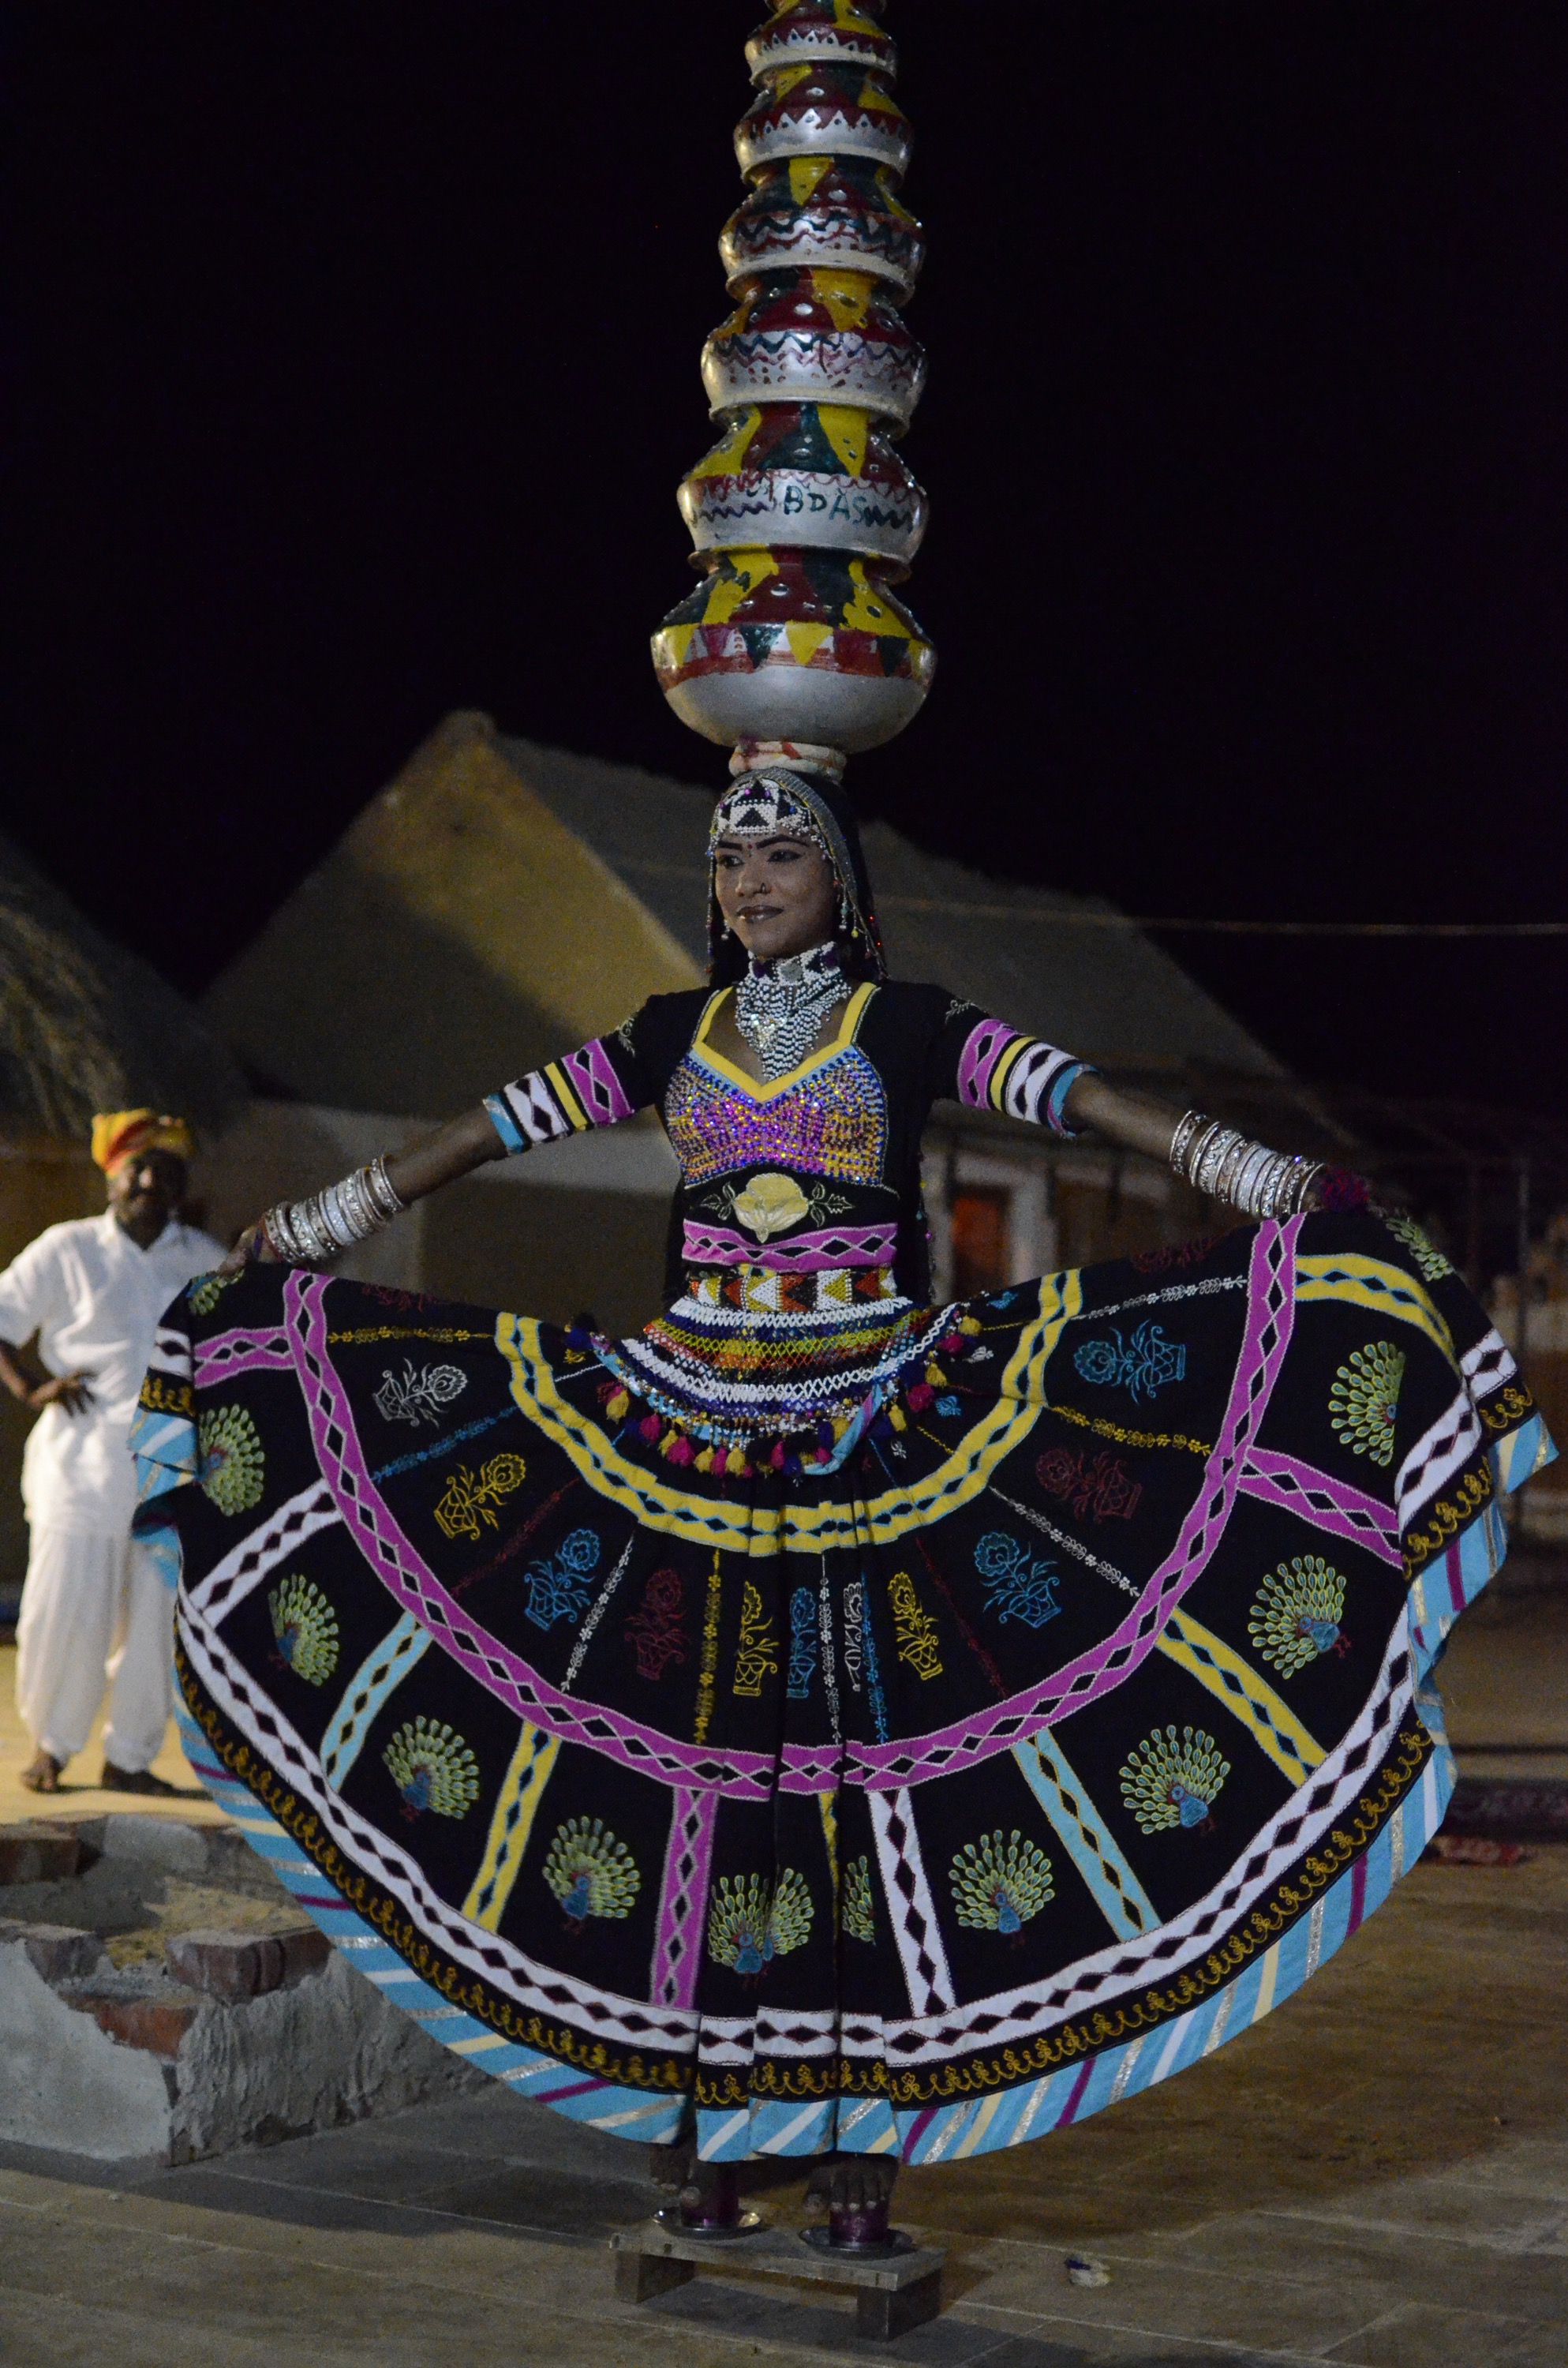 Rajasthan folk dance